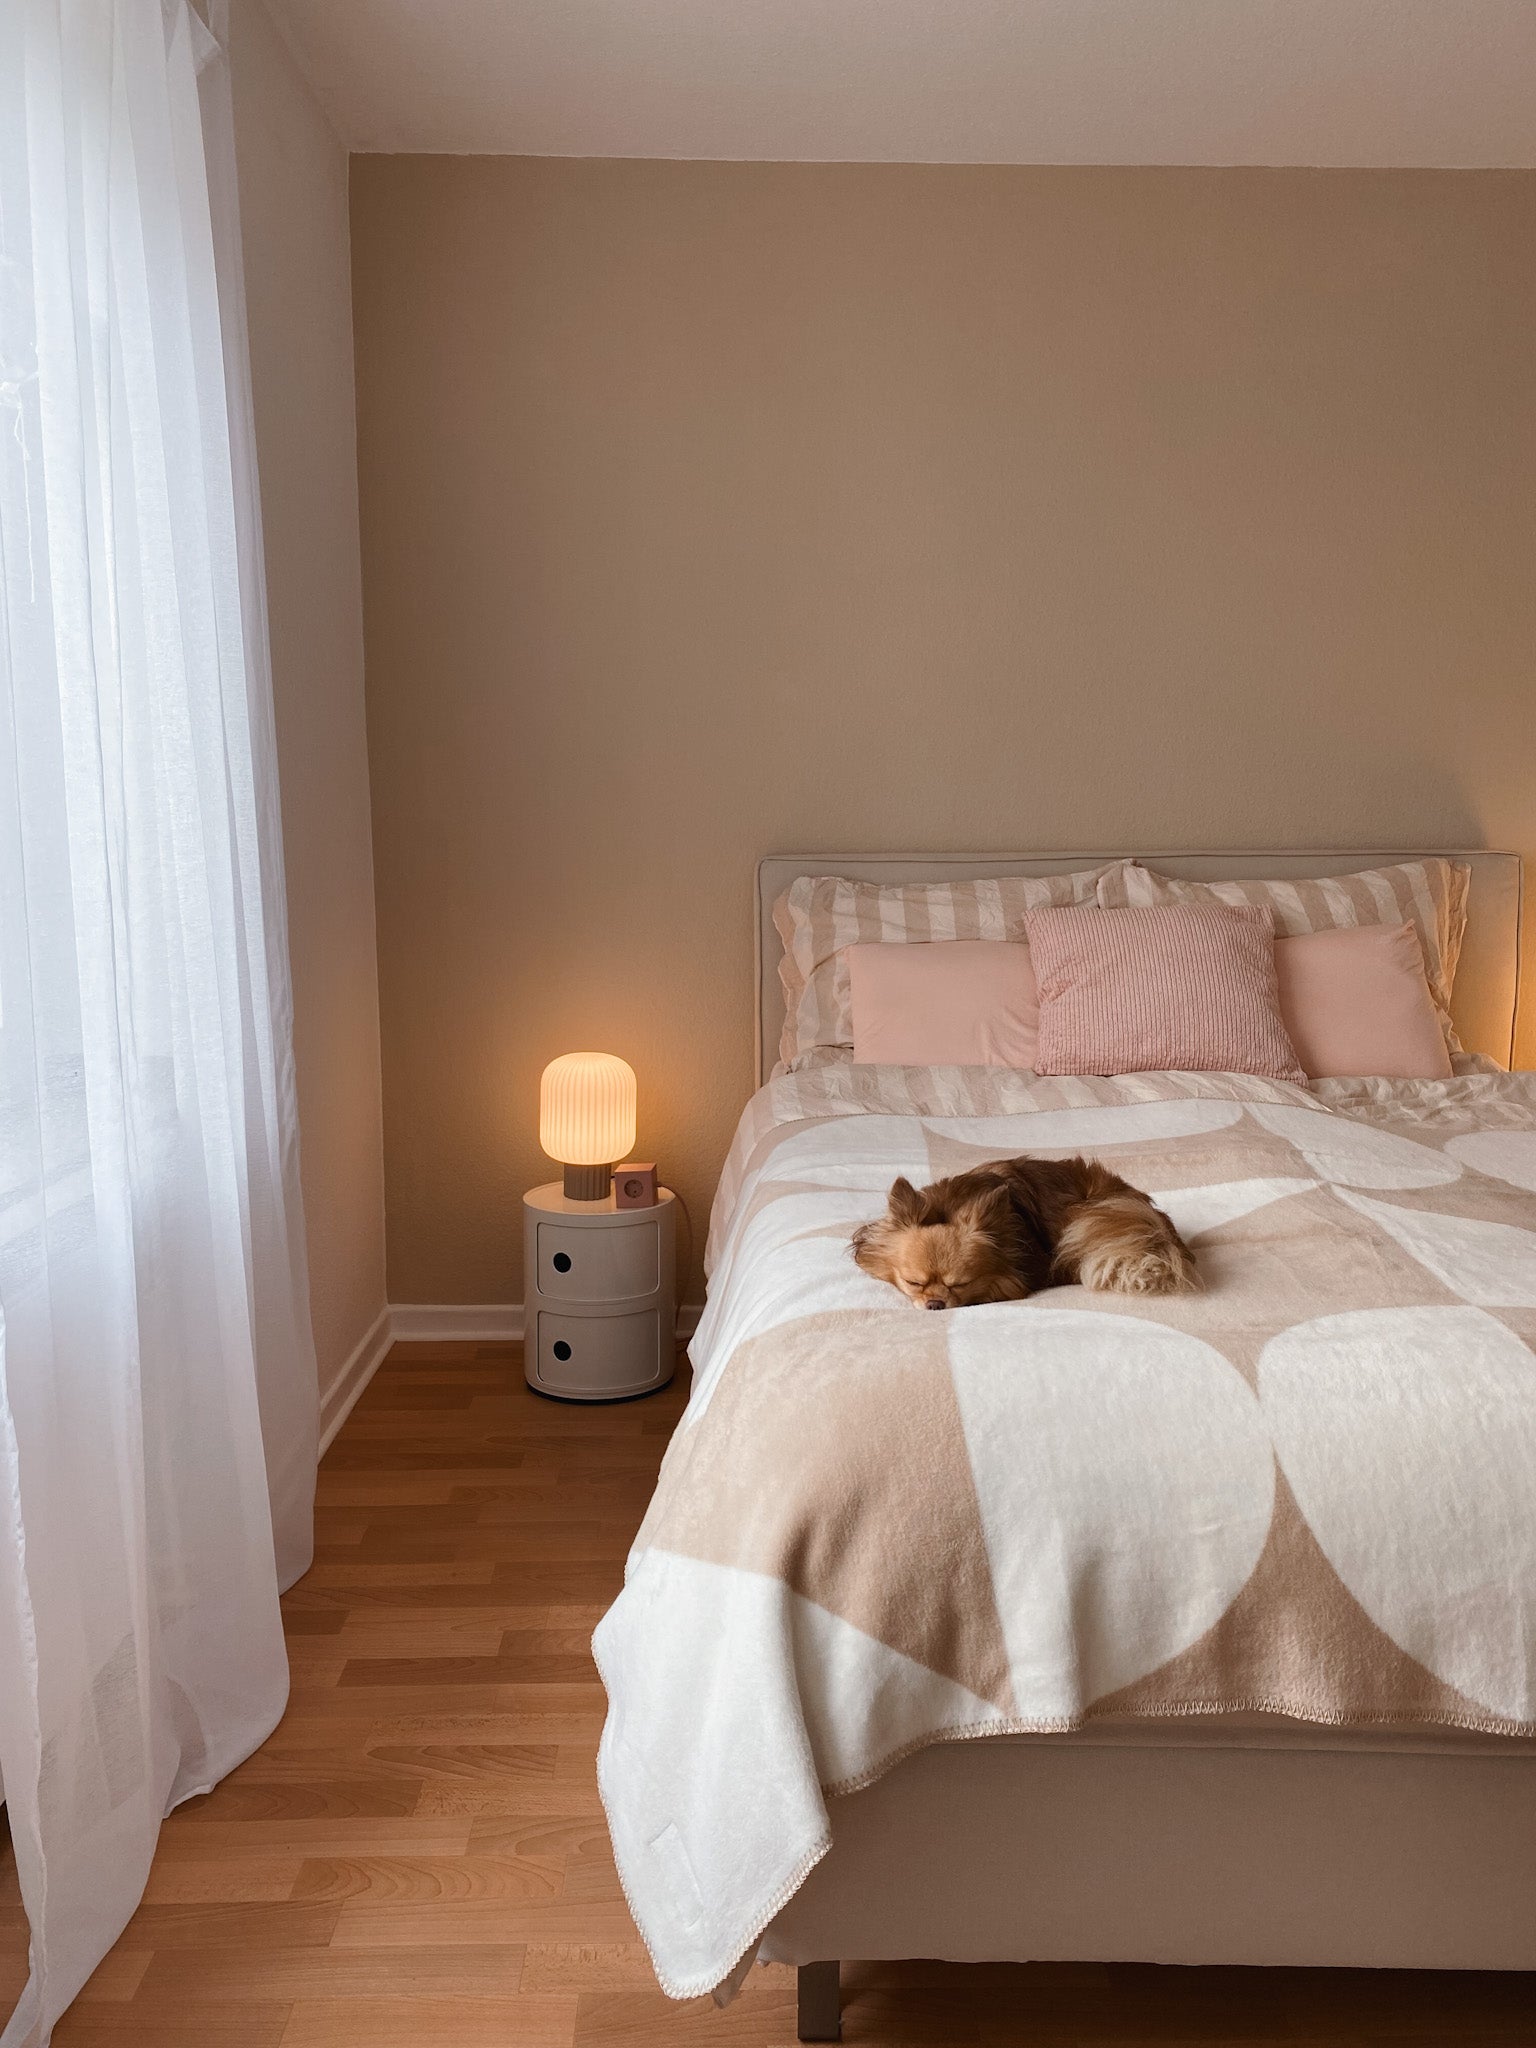 Schlafen Sie stilvoll mit unseren modernen Schlafzimmermöbeln, die Ihren Raum aufwerten und Ihre Erholung verbessern. Lassen Sie sich von gemütlichen und ästhetischen Ideen für Ihr Schlafzimmer inspirieren: Betten mit Kopfbretter, Nachttischen, Bänke, Ambientebeleuchtung und mehr.